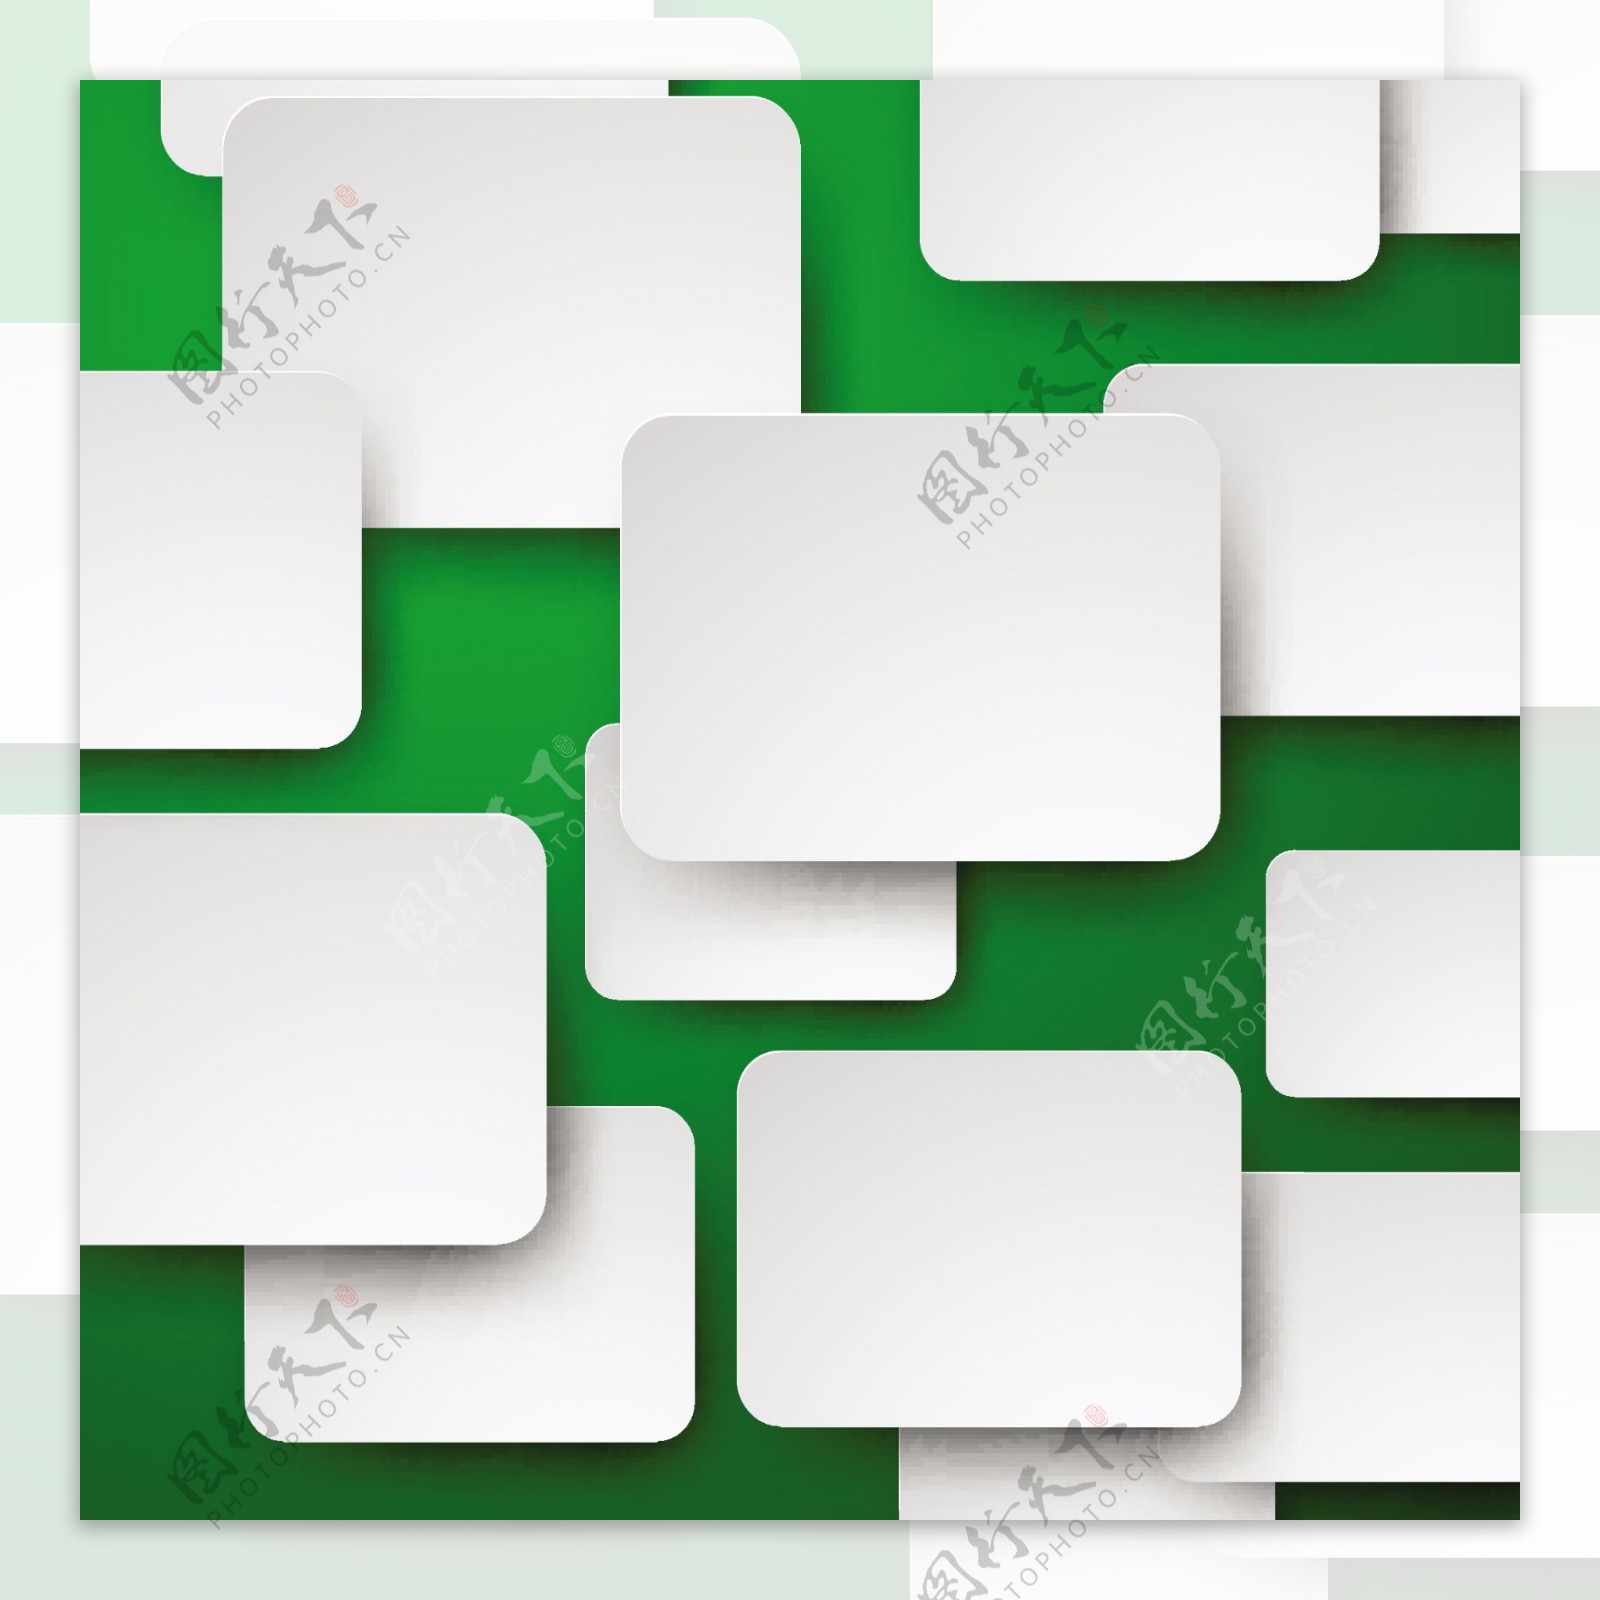 绿色背景下的白色方块矢量素材